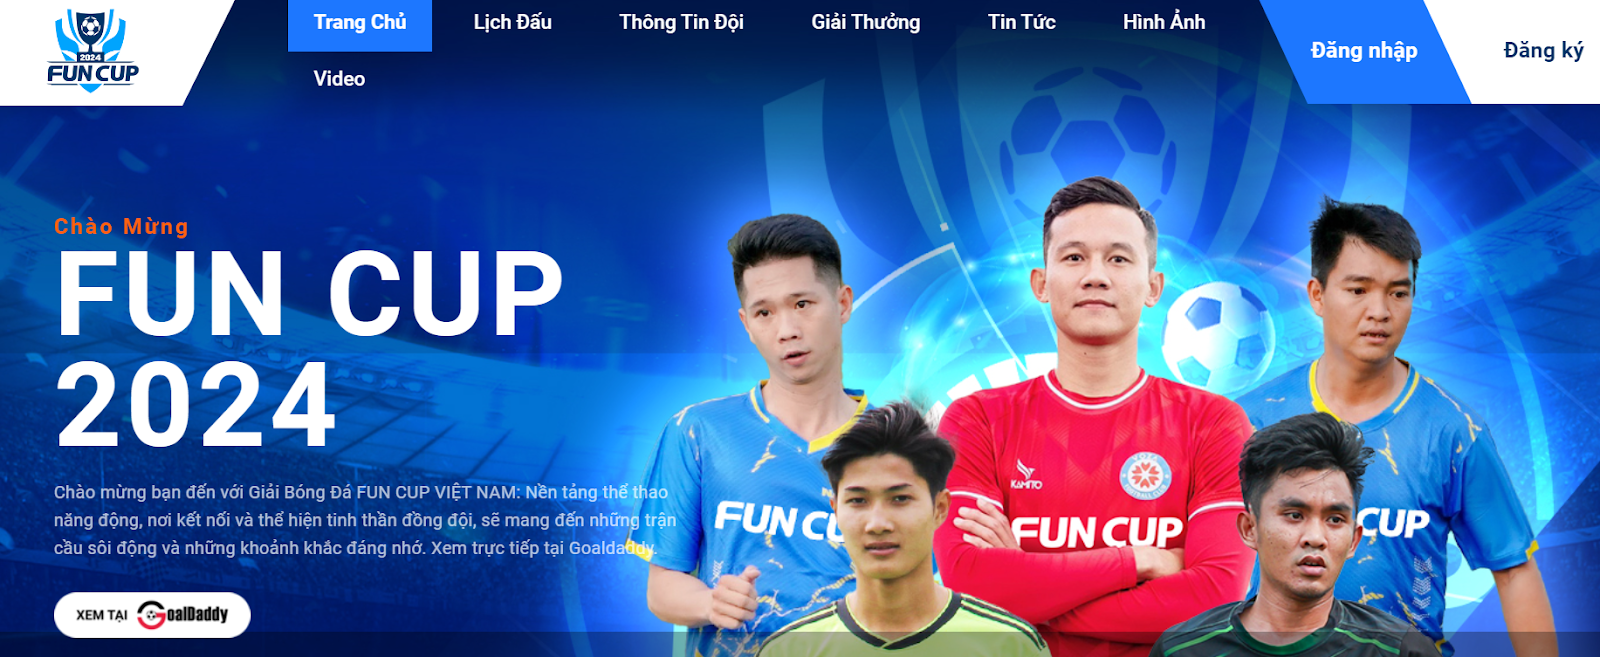 Fun Cup 2024 - Giải bóng đá toàn quốc Việt Nam